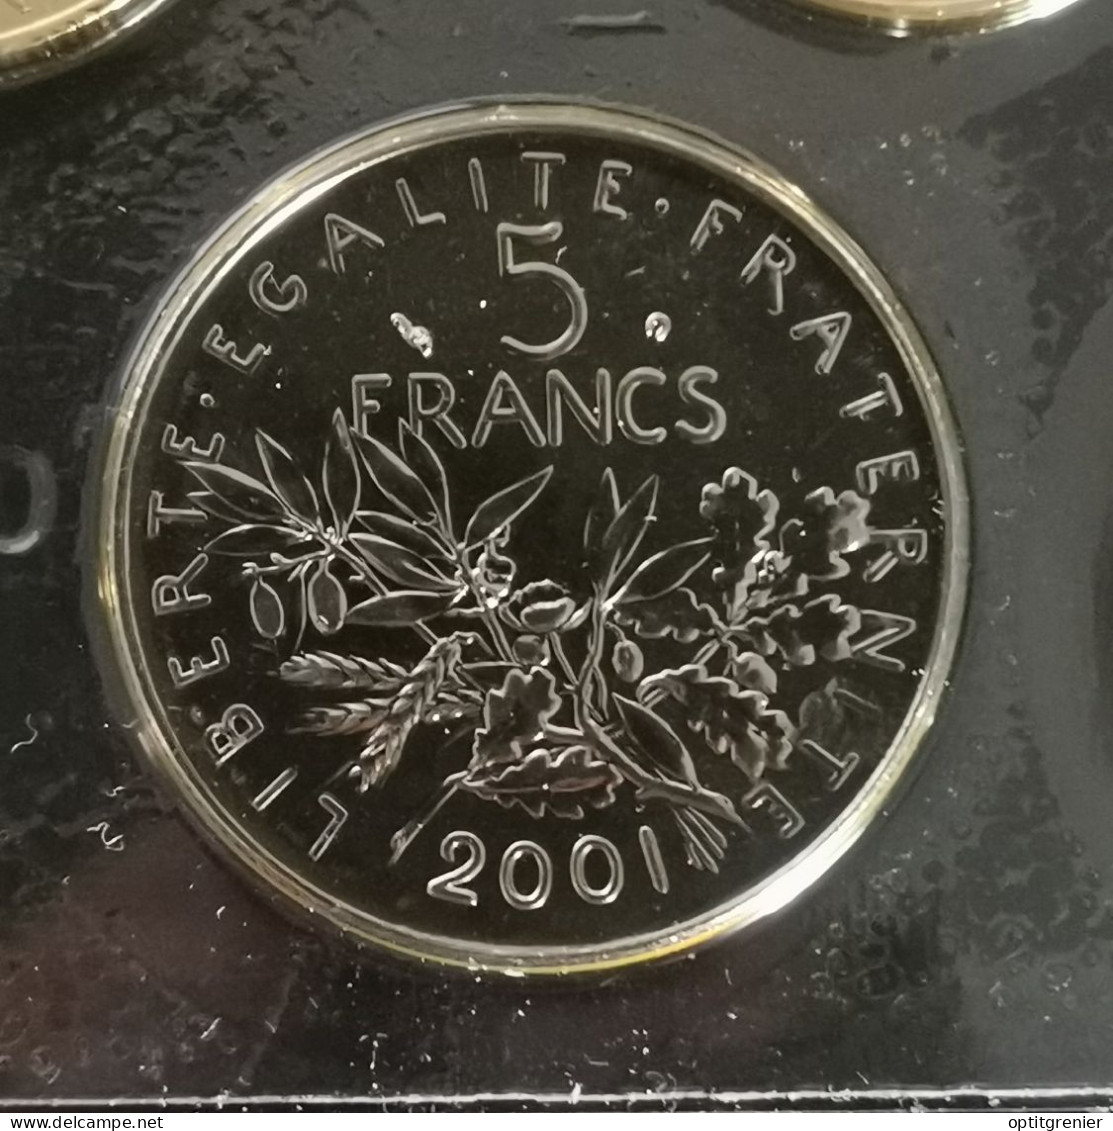 5 FRANCS SEMEUSE 2001 / SCELLEE DU COFFRET BU / UNC FRANCE - 5 Francs